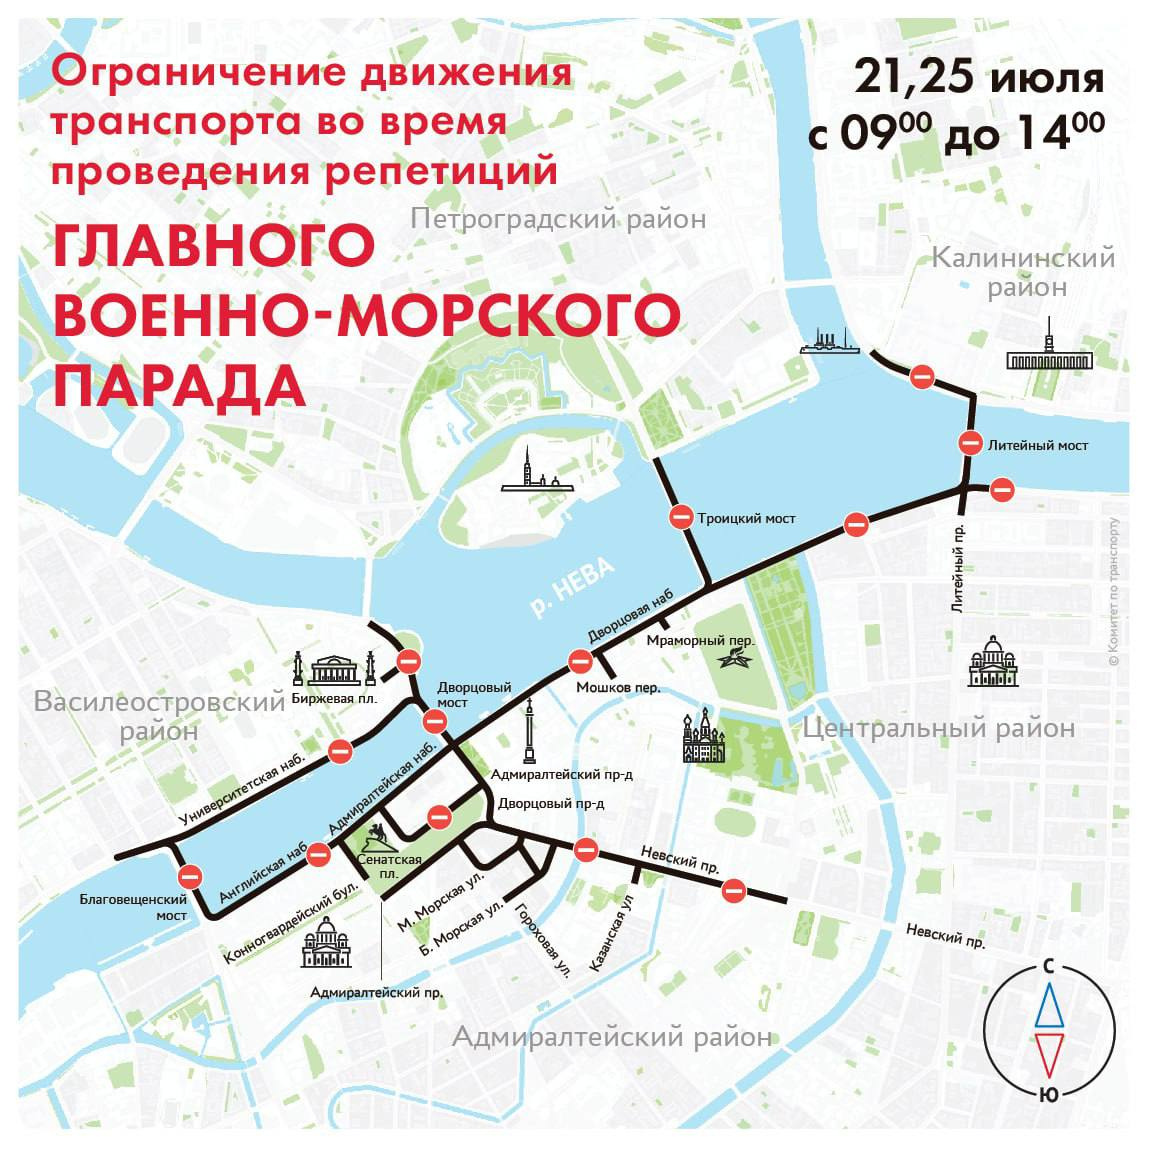 Петербургские мосты разведут днем для репетиции военно-морского парада